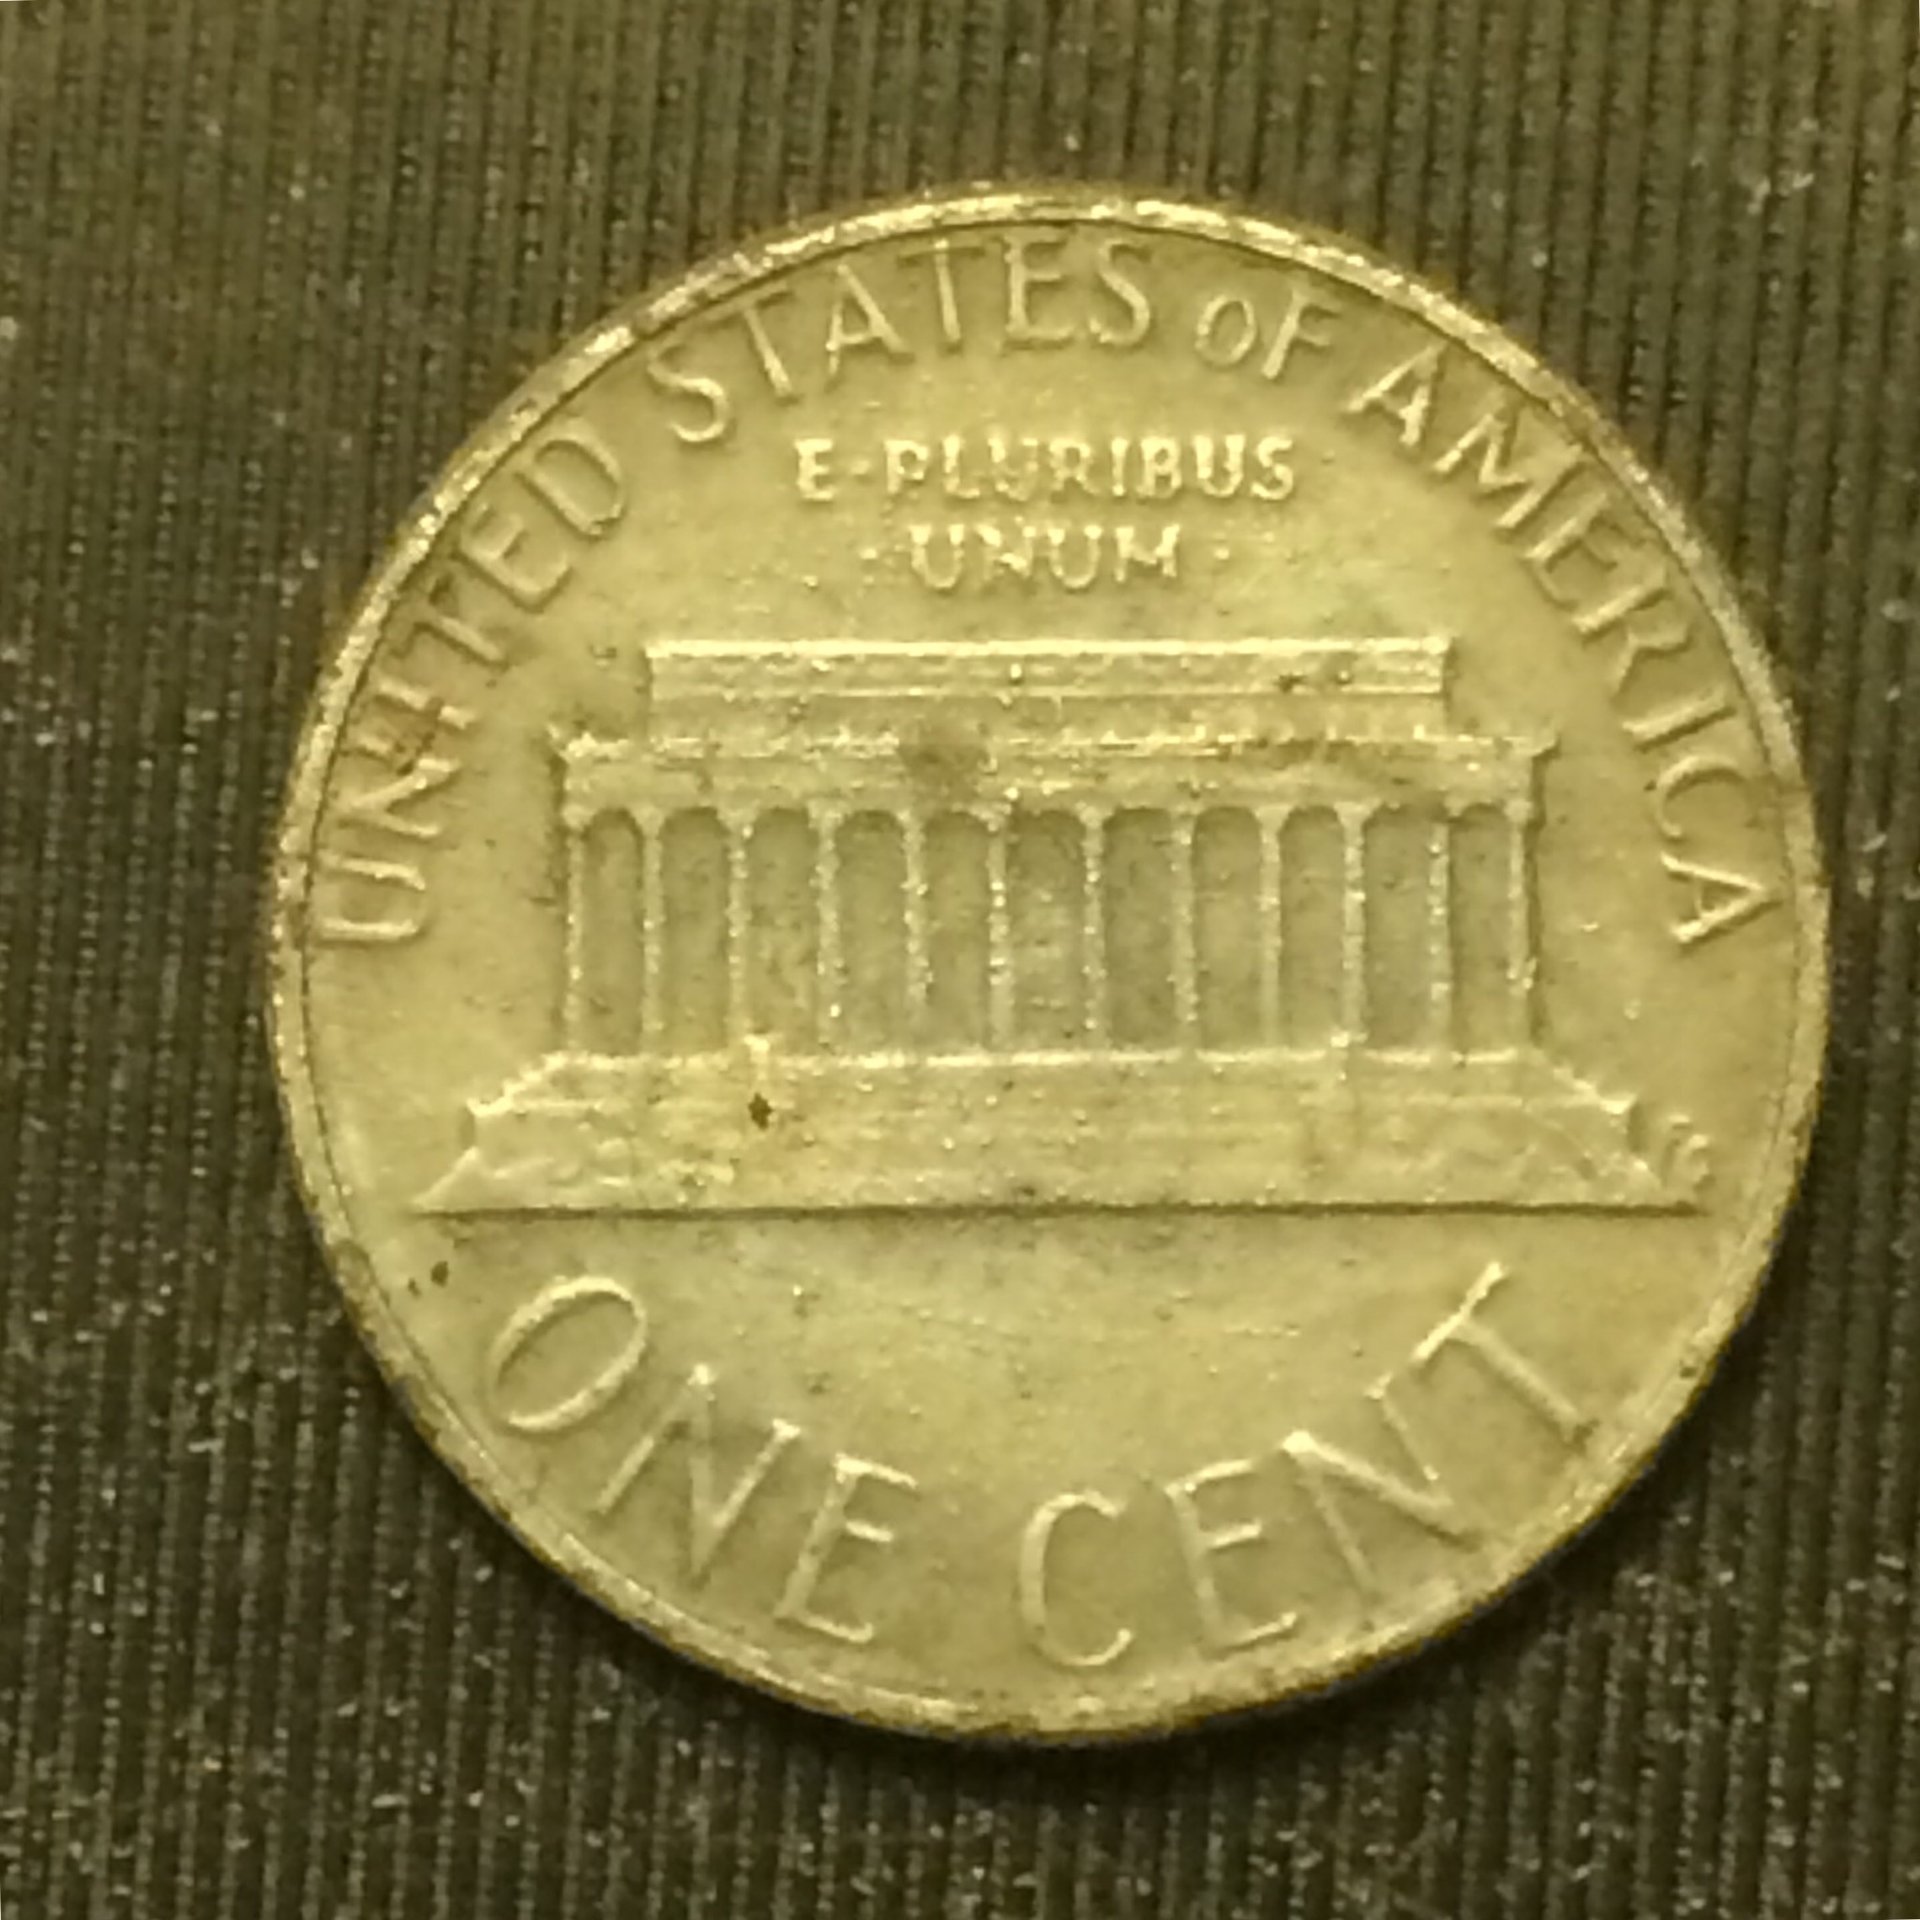 zinc coin crypto